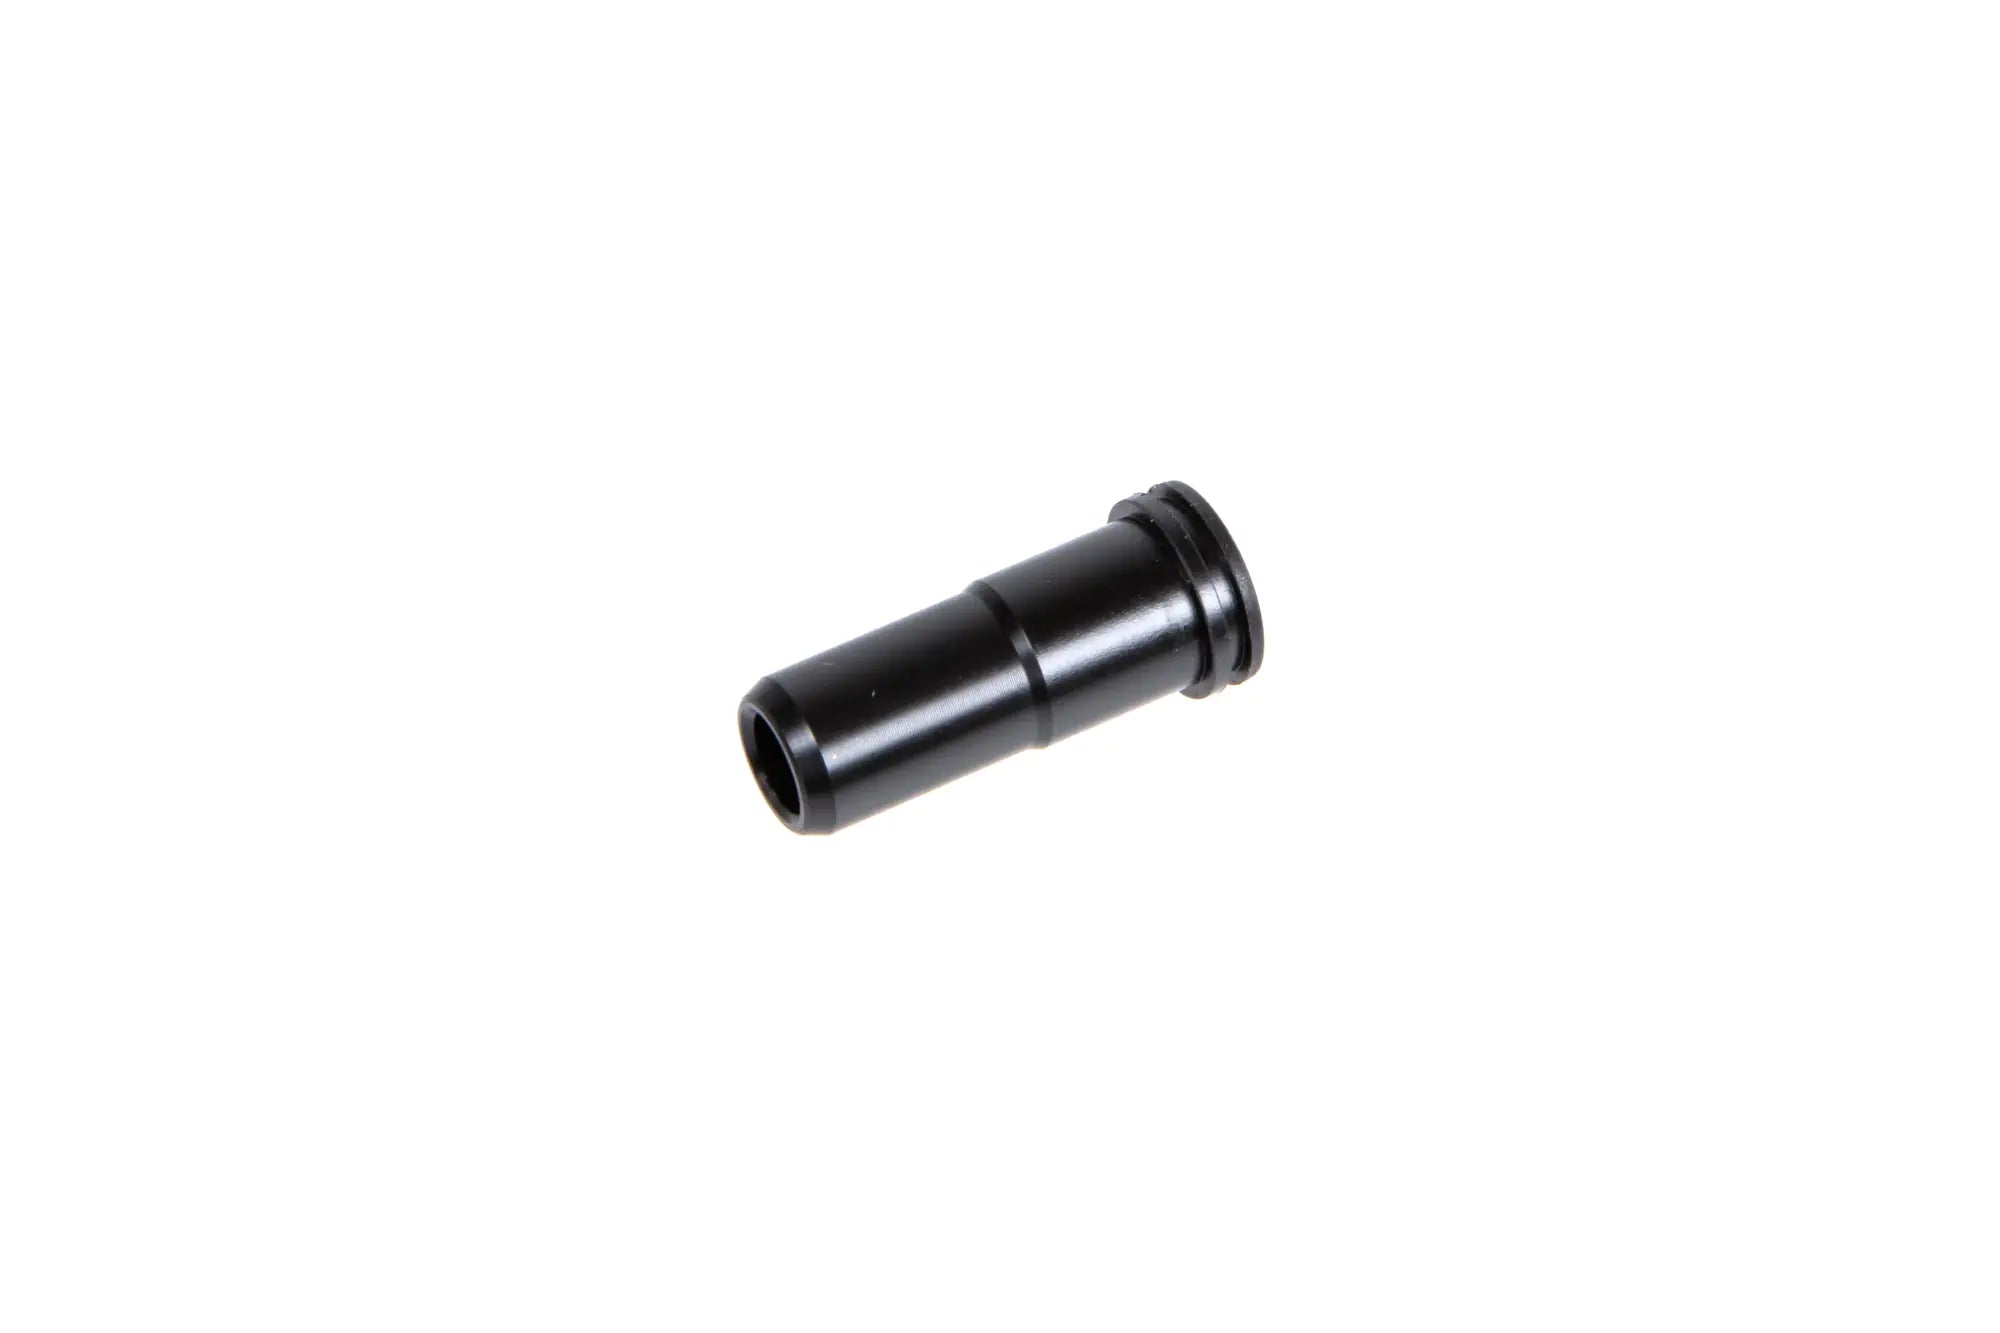 Delrin TopMax nozzle for M4 21.10mm replicas